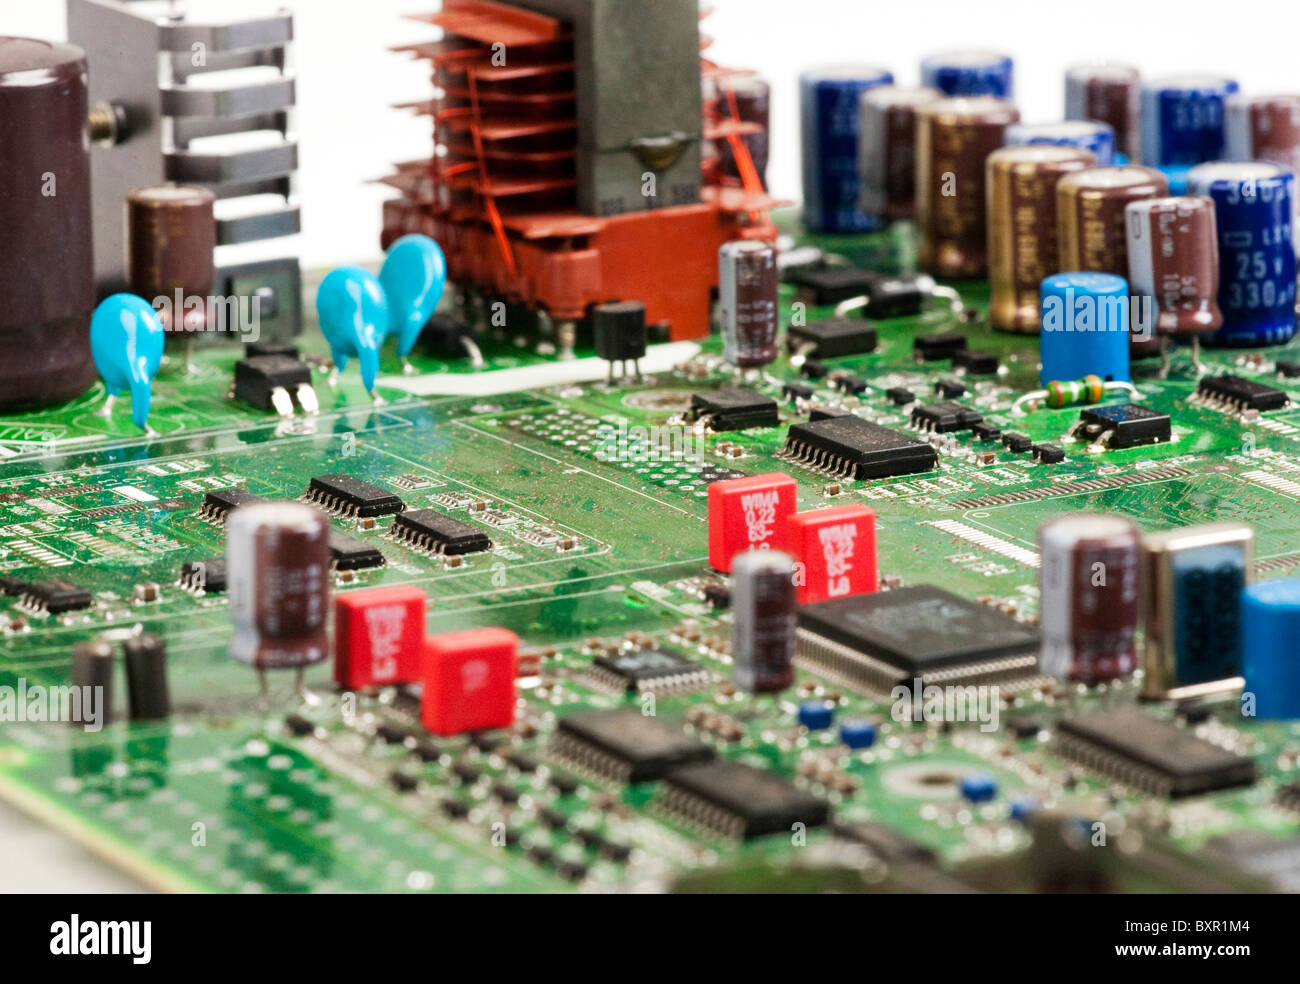 Circuit imprimé montrant différents composants électroniques Banque D'Images